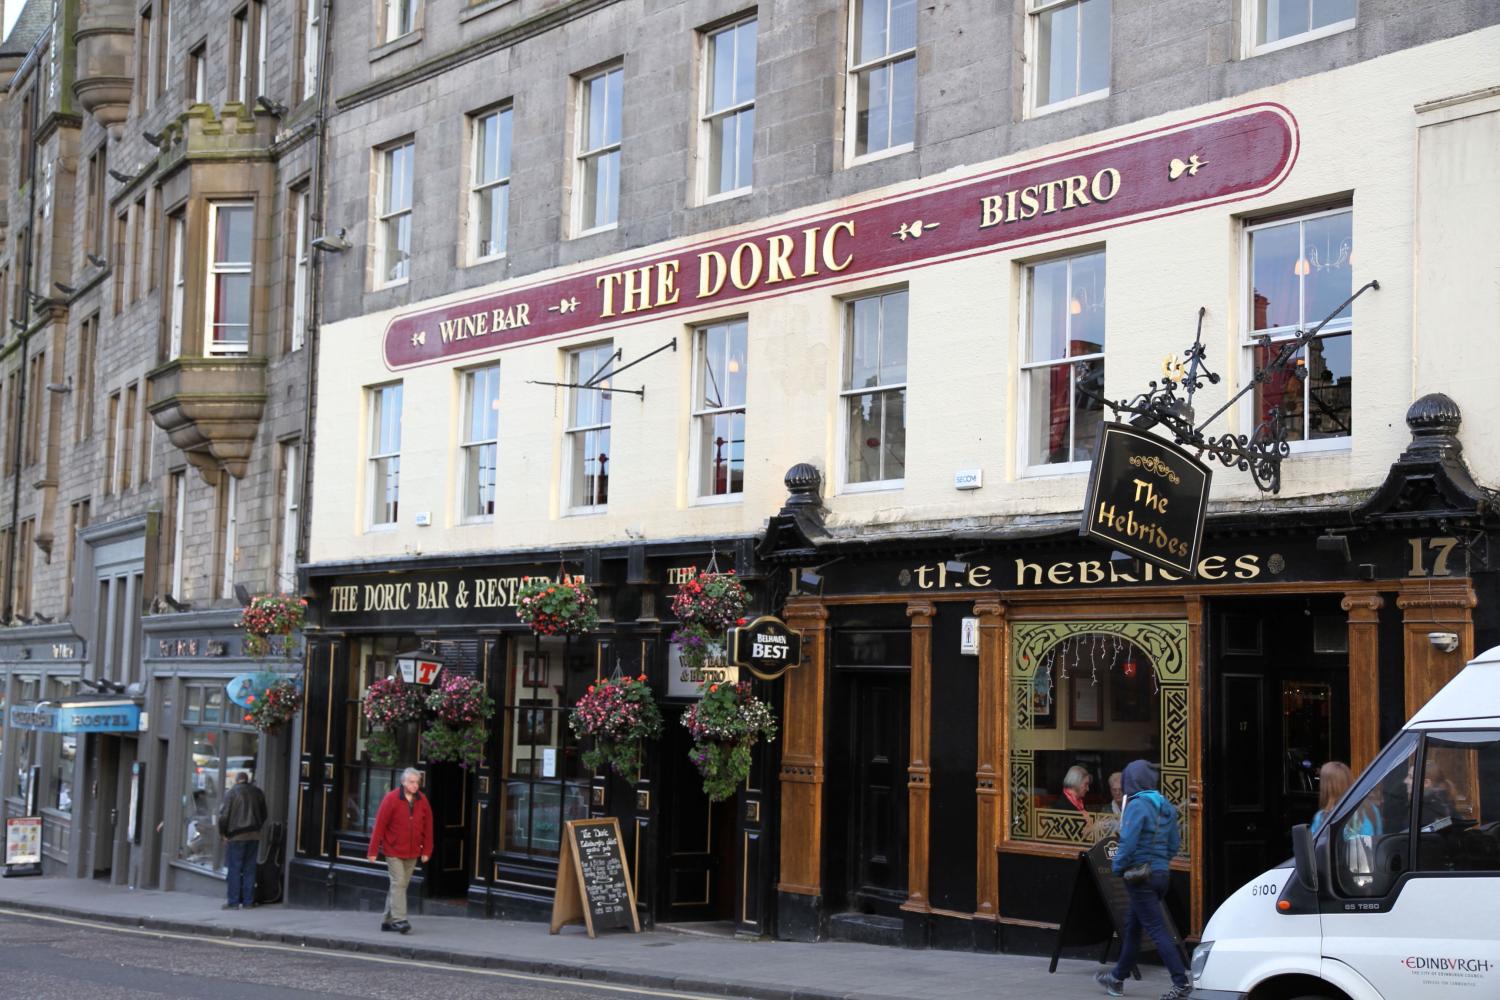 The Doric in Edinburgh